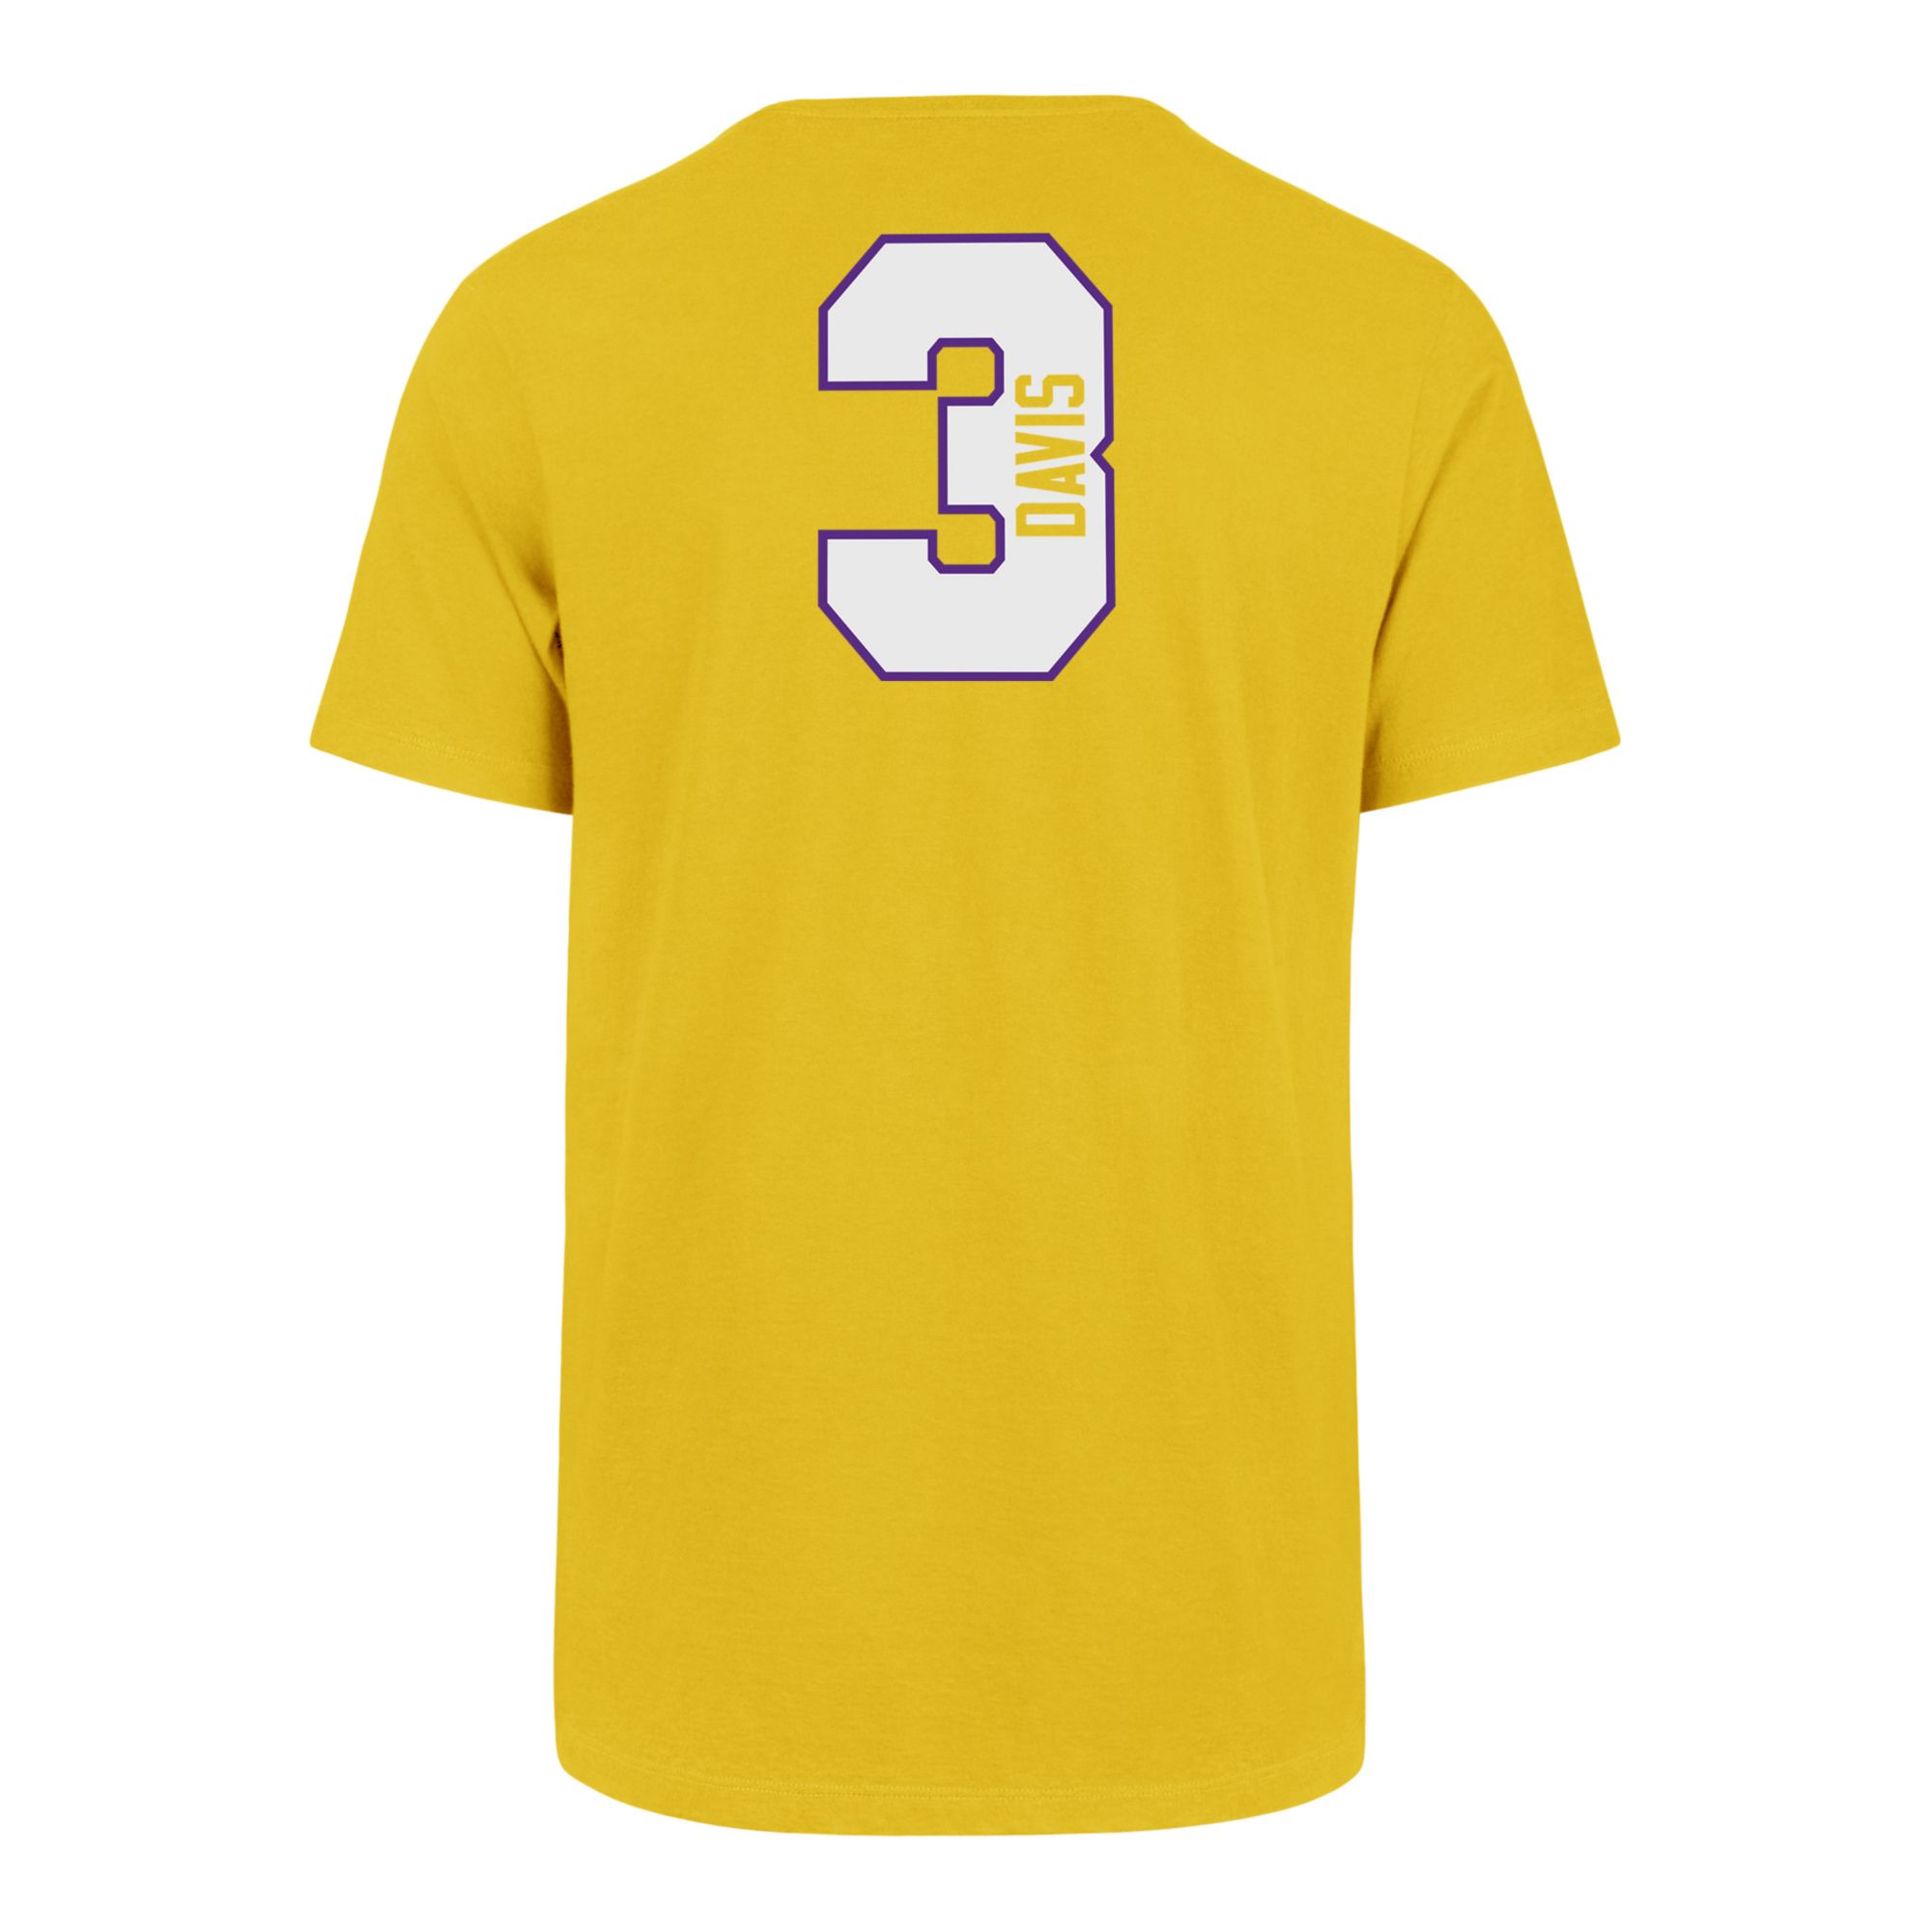 Anthony Davis Jerseys, Davis Lakers Jersey, Shirts, Anthony Davis